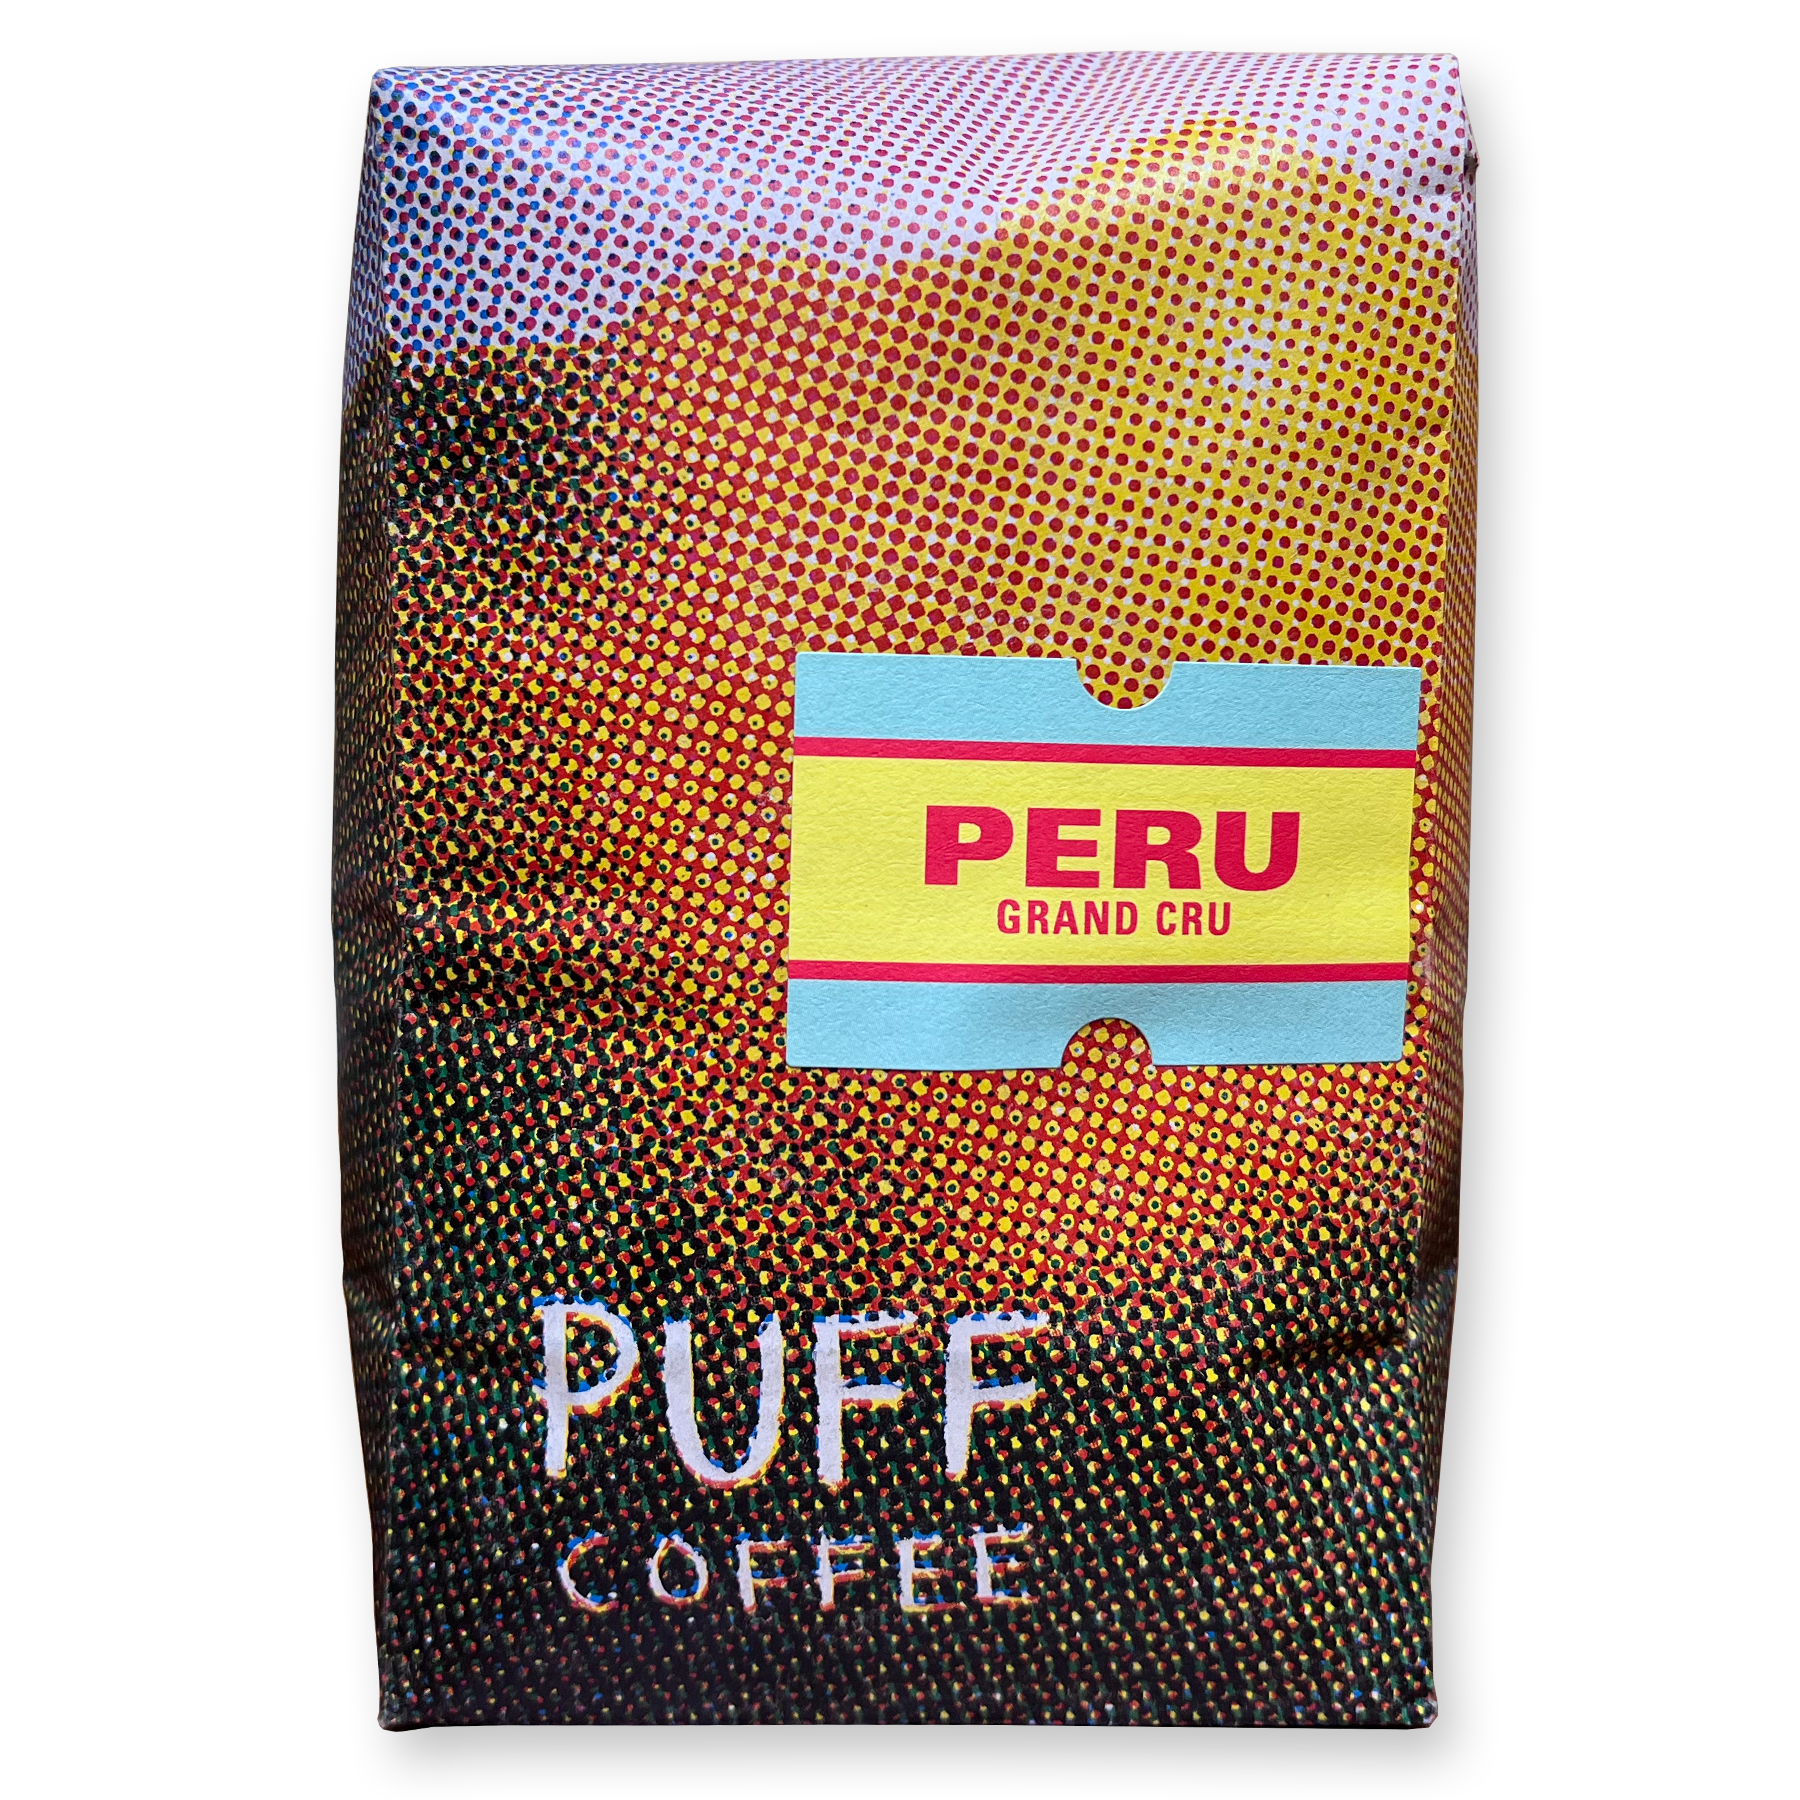 Peru Grand Cru